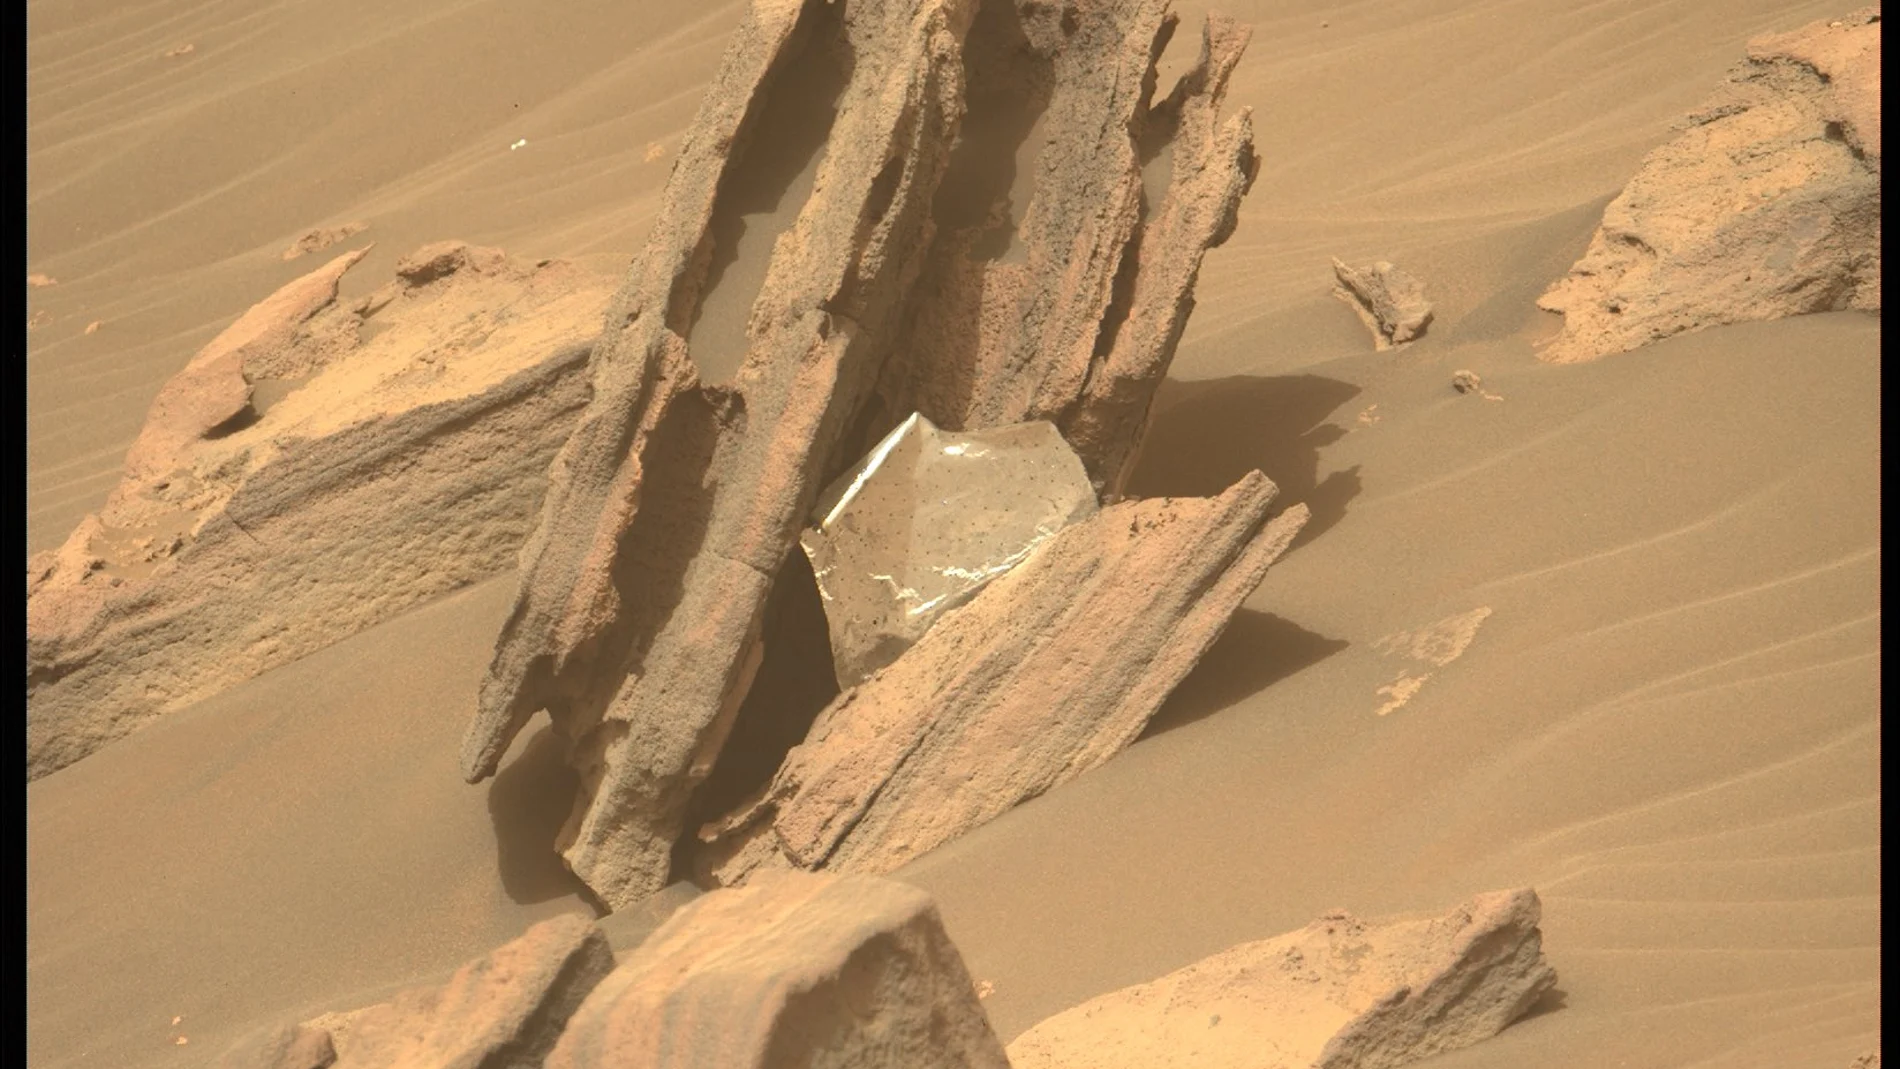 El extraño objeto plateado captado por el Perseverance en Marte que no pertenece al planeta rojo